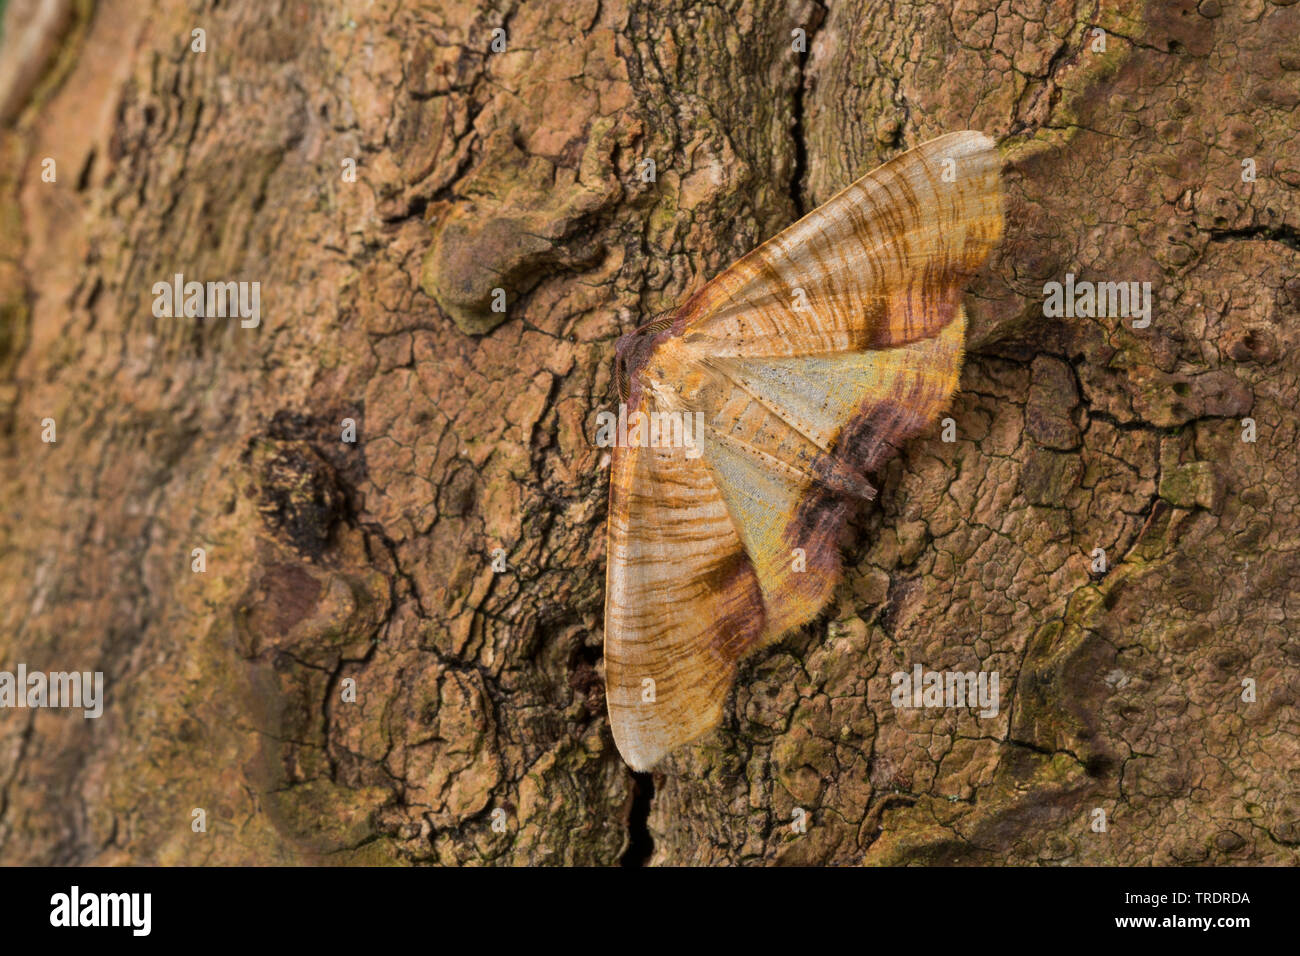 Plagodis dolabraria (aile brûlée), assis à l'écorce, vue de dessus, Allemagne Banque D'Images